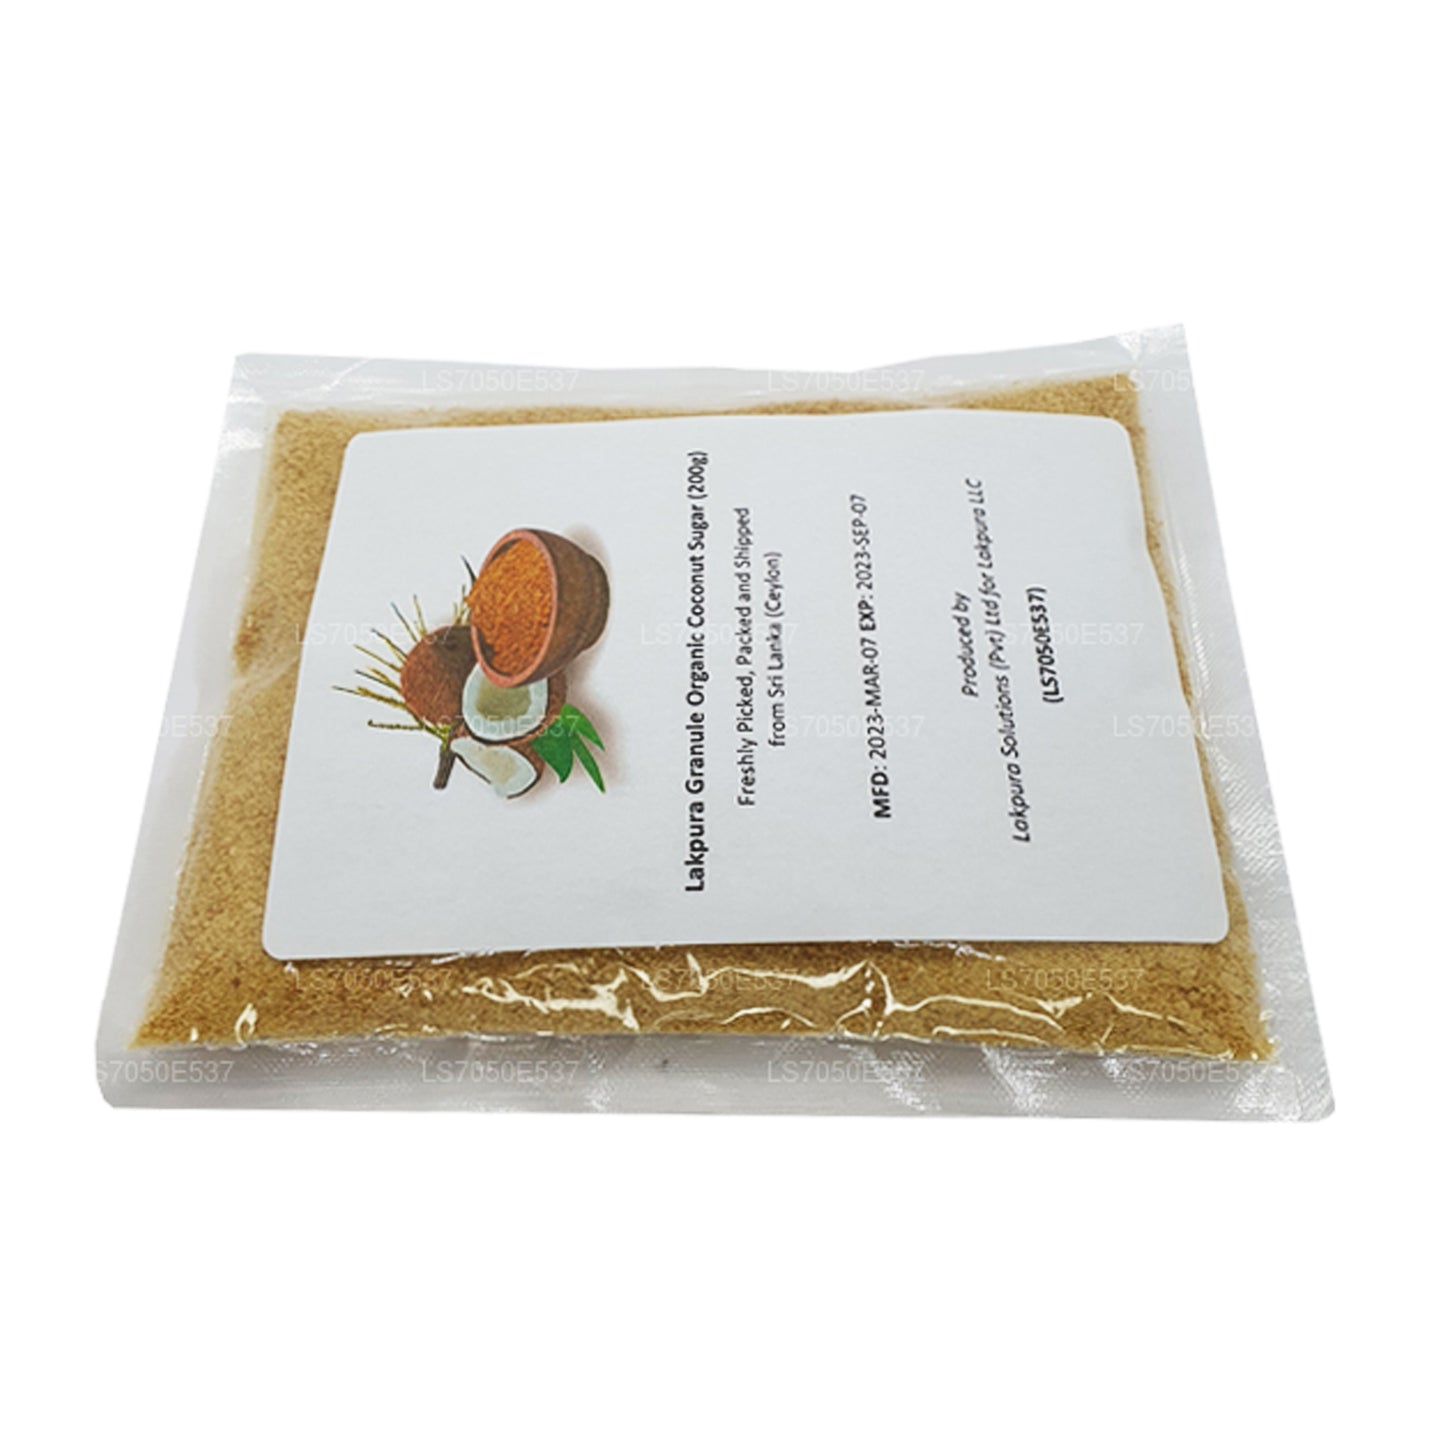 Lakpura Granule Organic Coconut Sugar